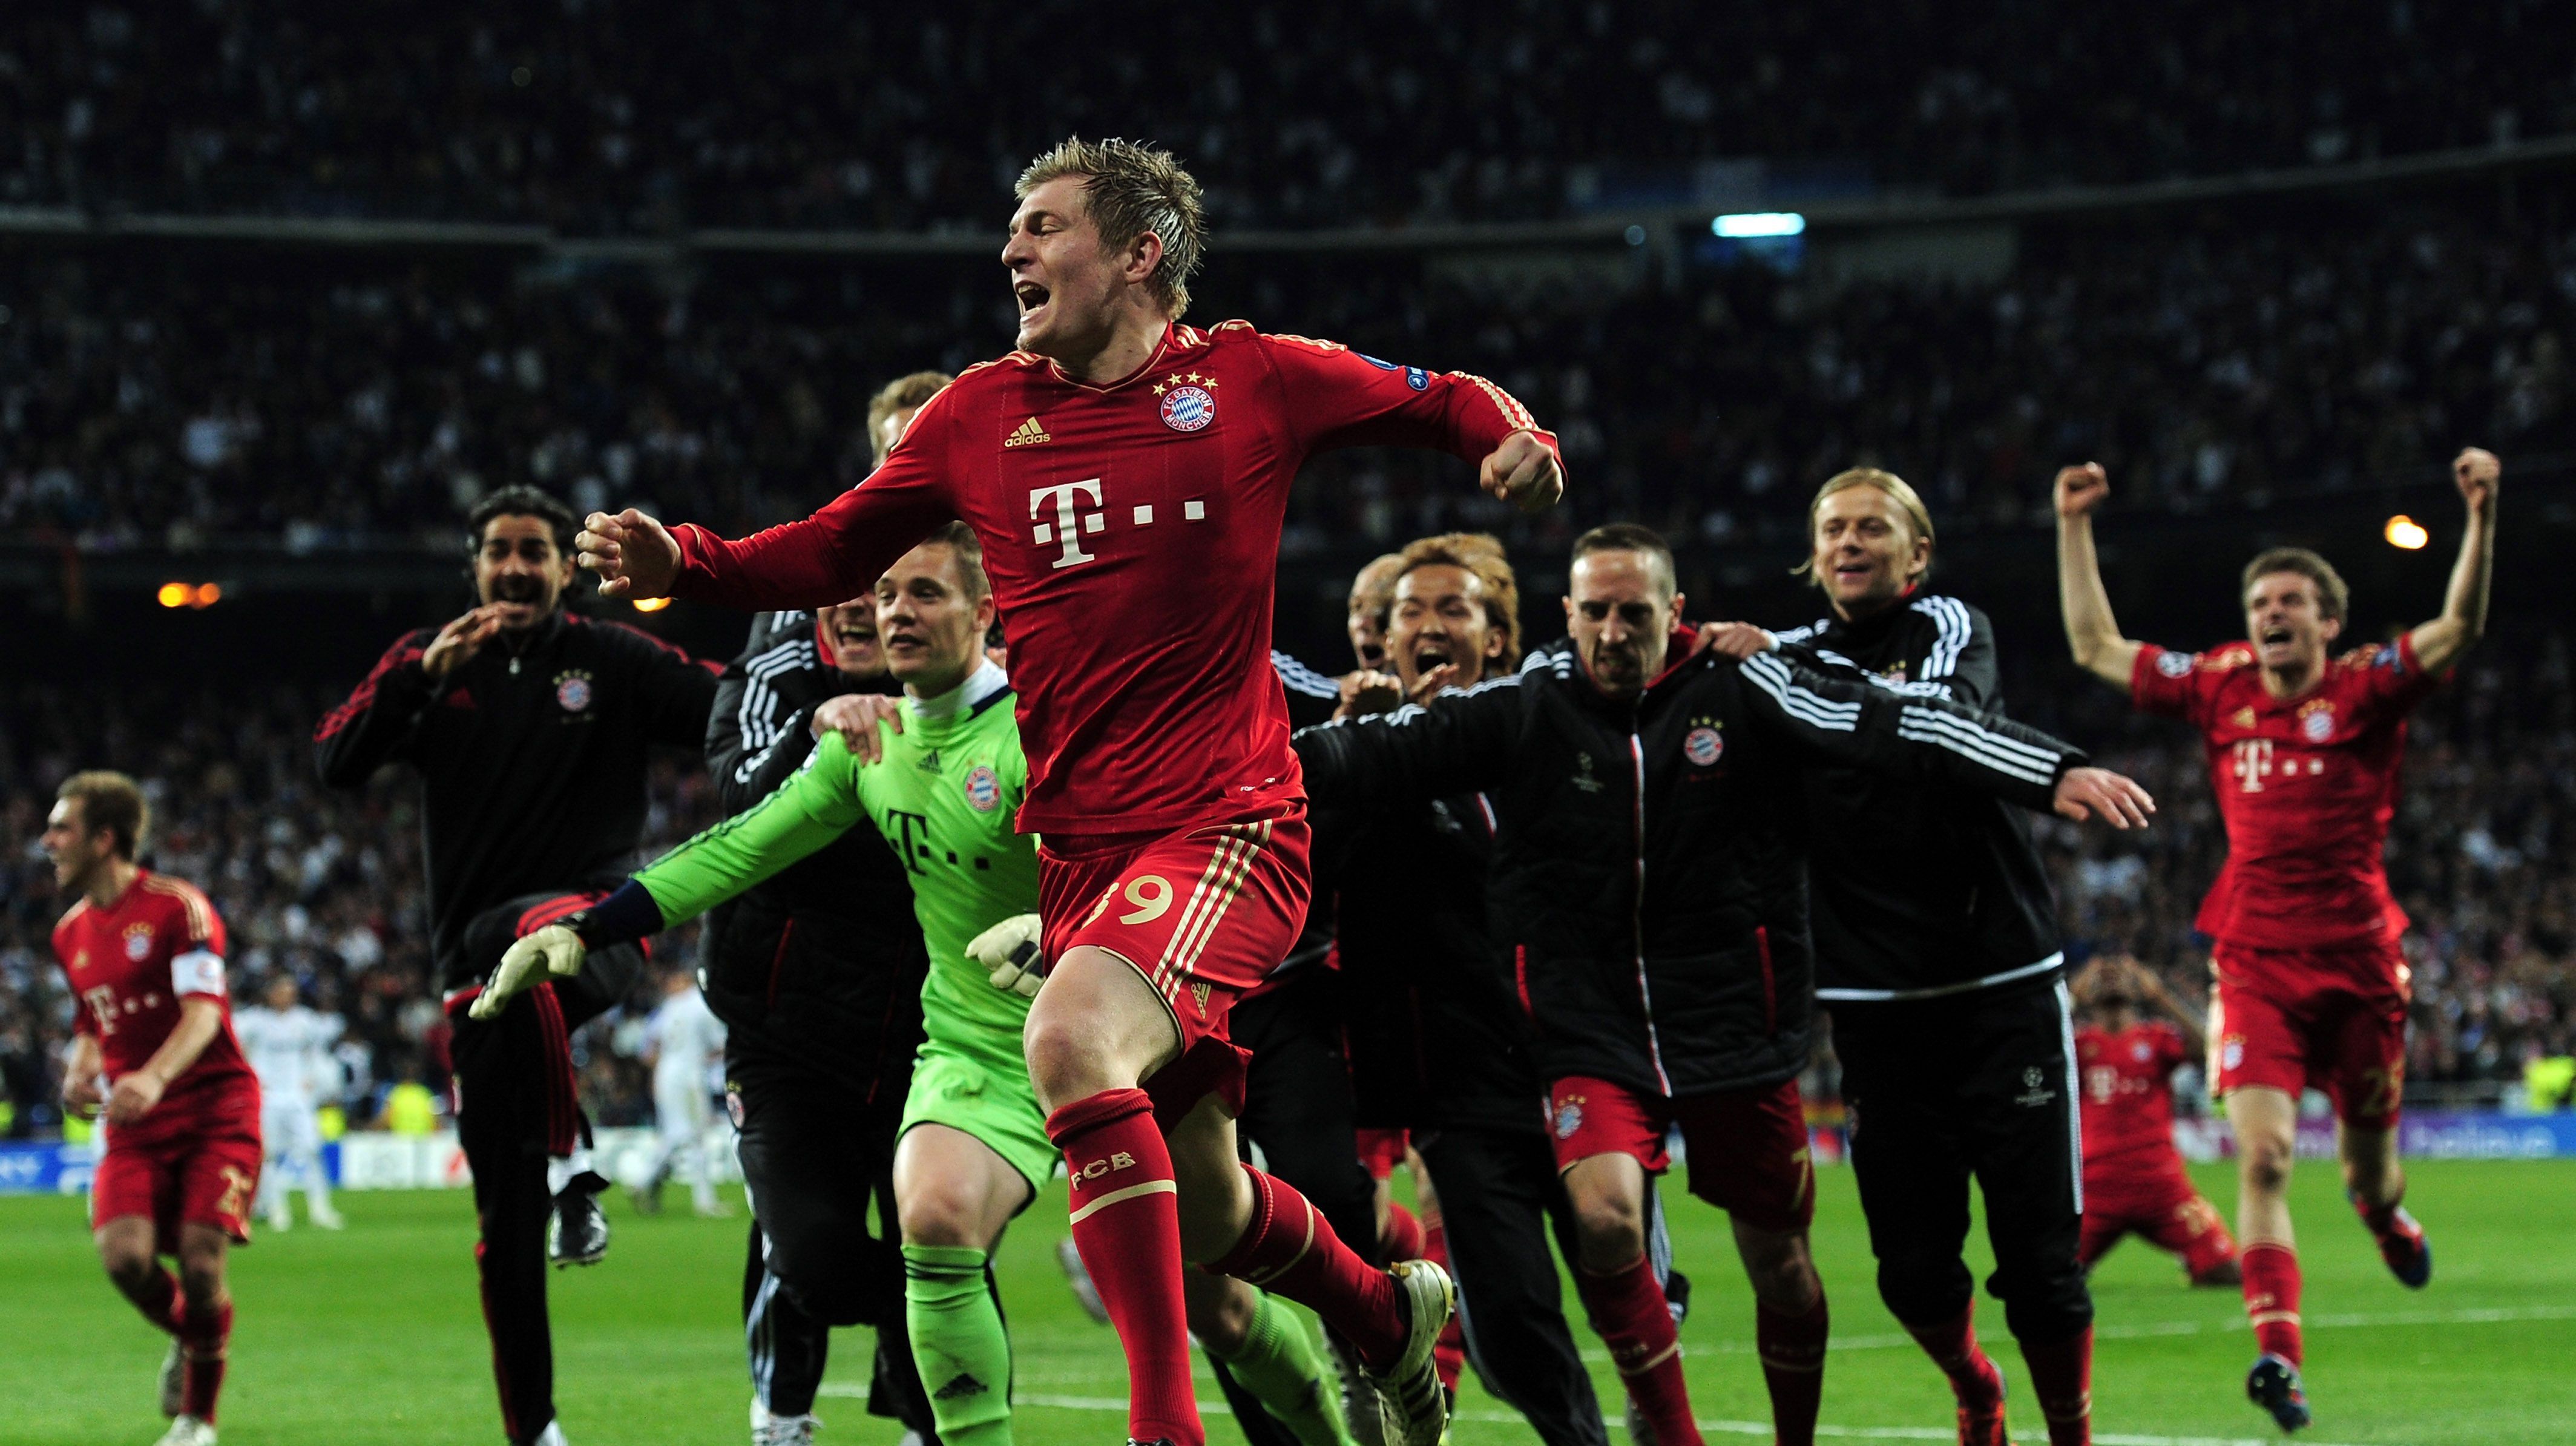 
                <strong>2012 - Halbfinale</strong><br>
                Nach dem Finaleinzug rennen die Bayern-Spieler über den Rasen. Eine Riesenfreude steht ihnen ins Gesicht geschrieben.
              